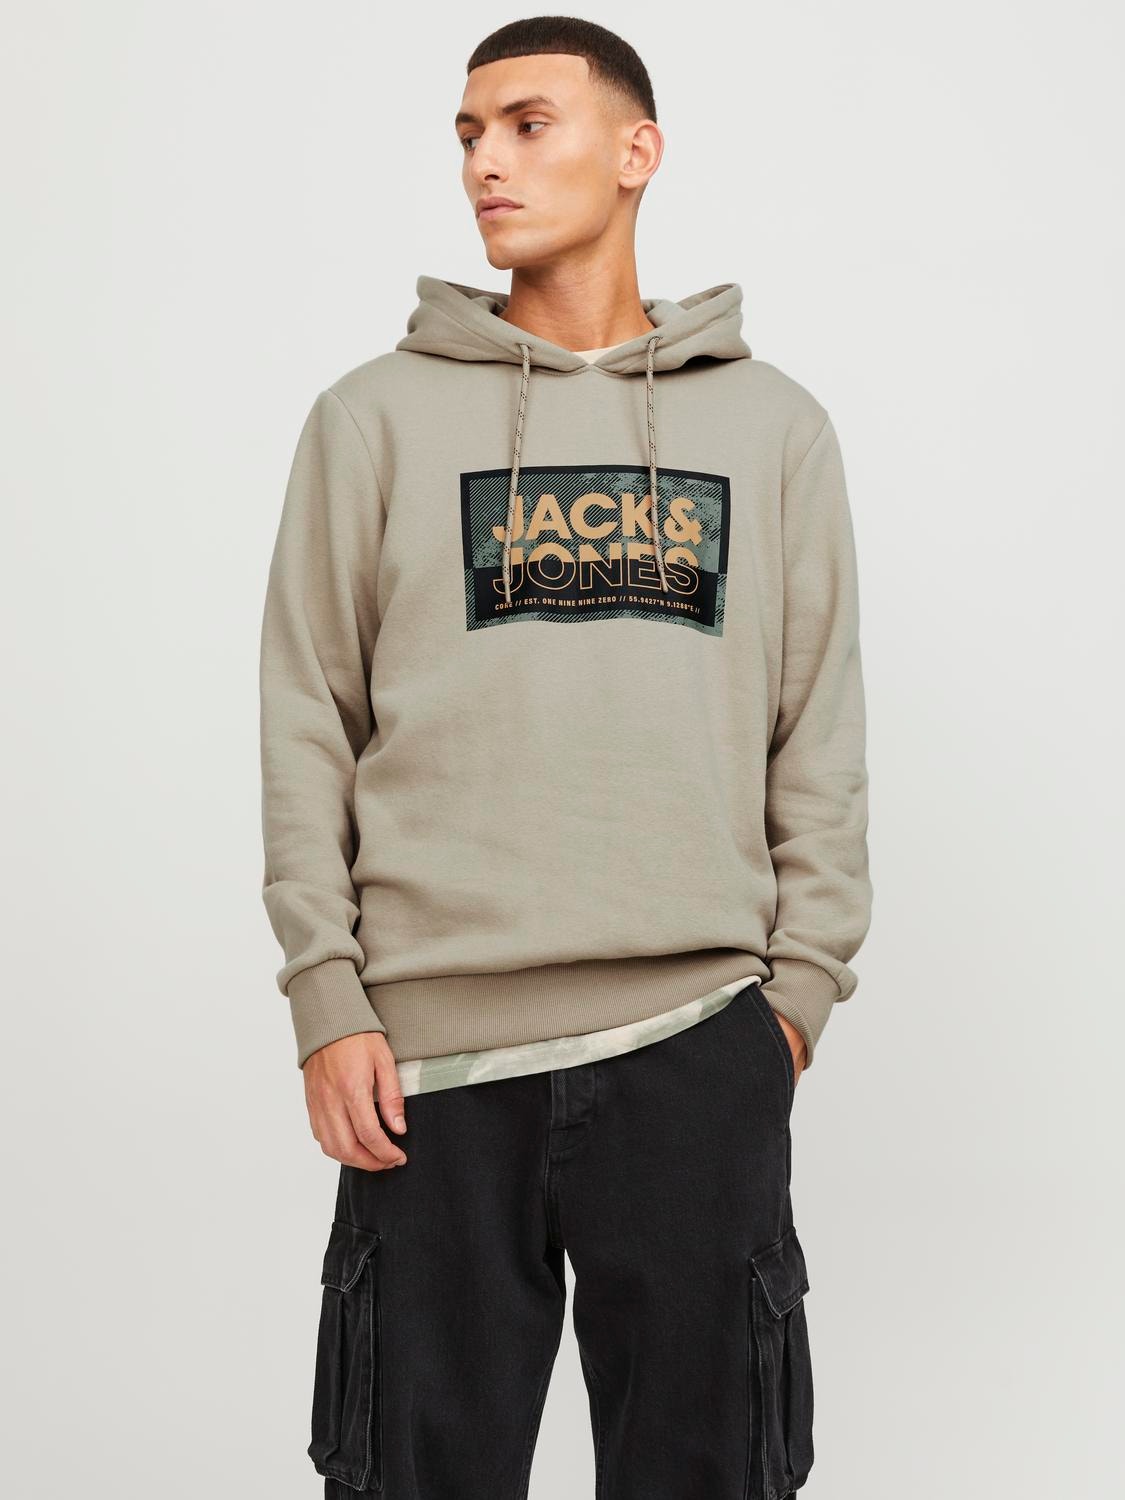 Jack & Jones Hoodie Logo -Crockery - 12253443